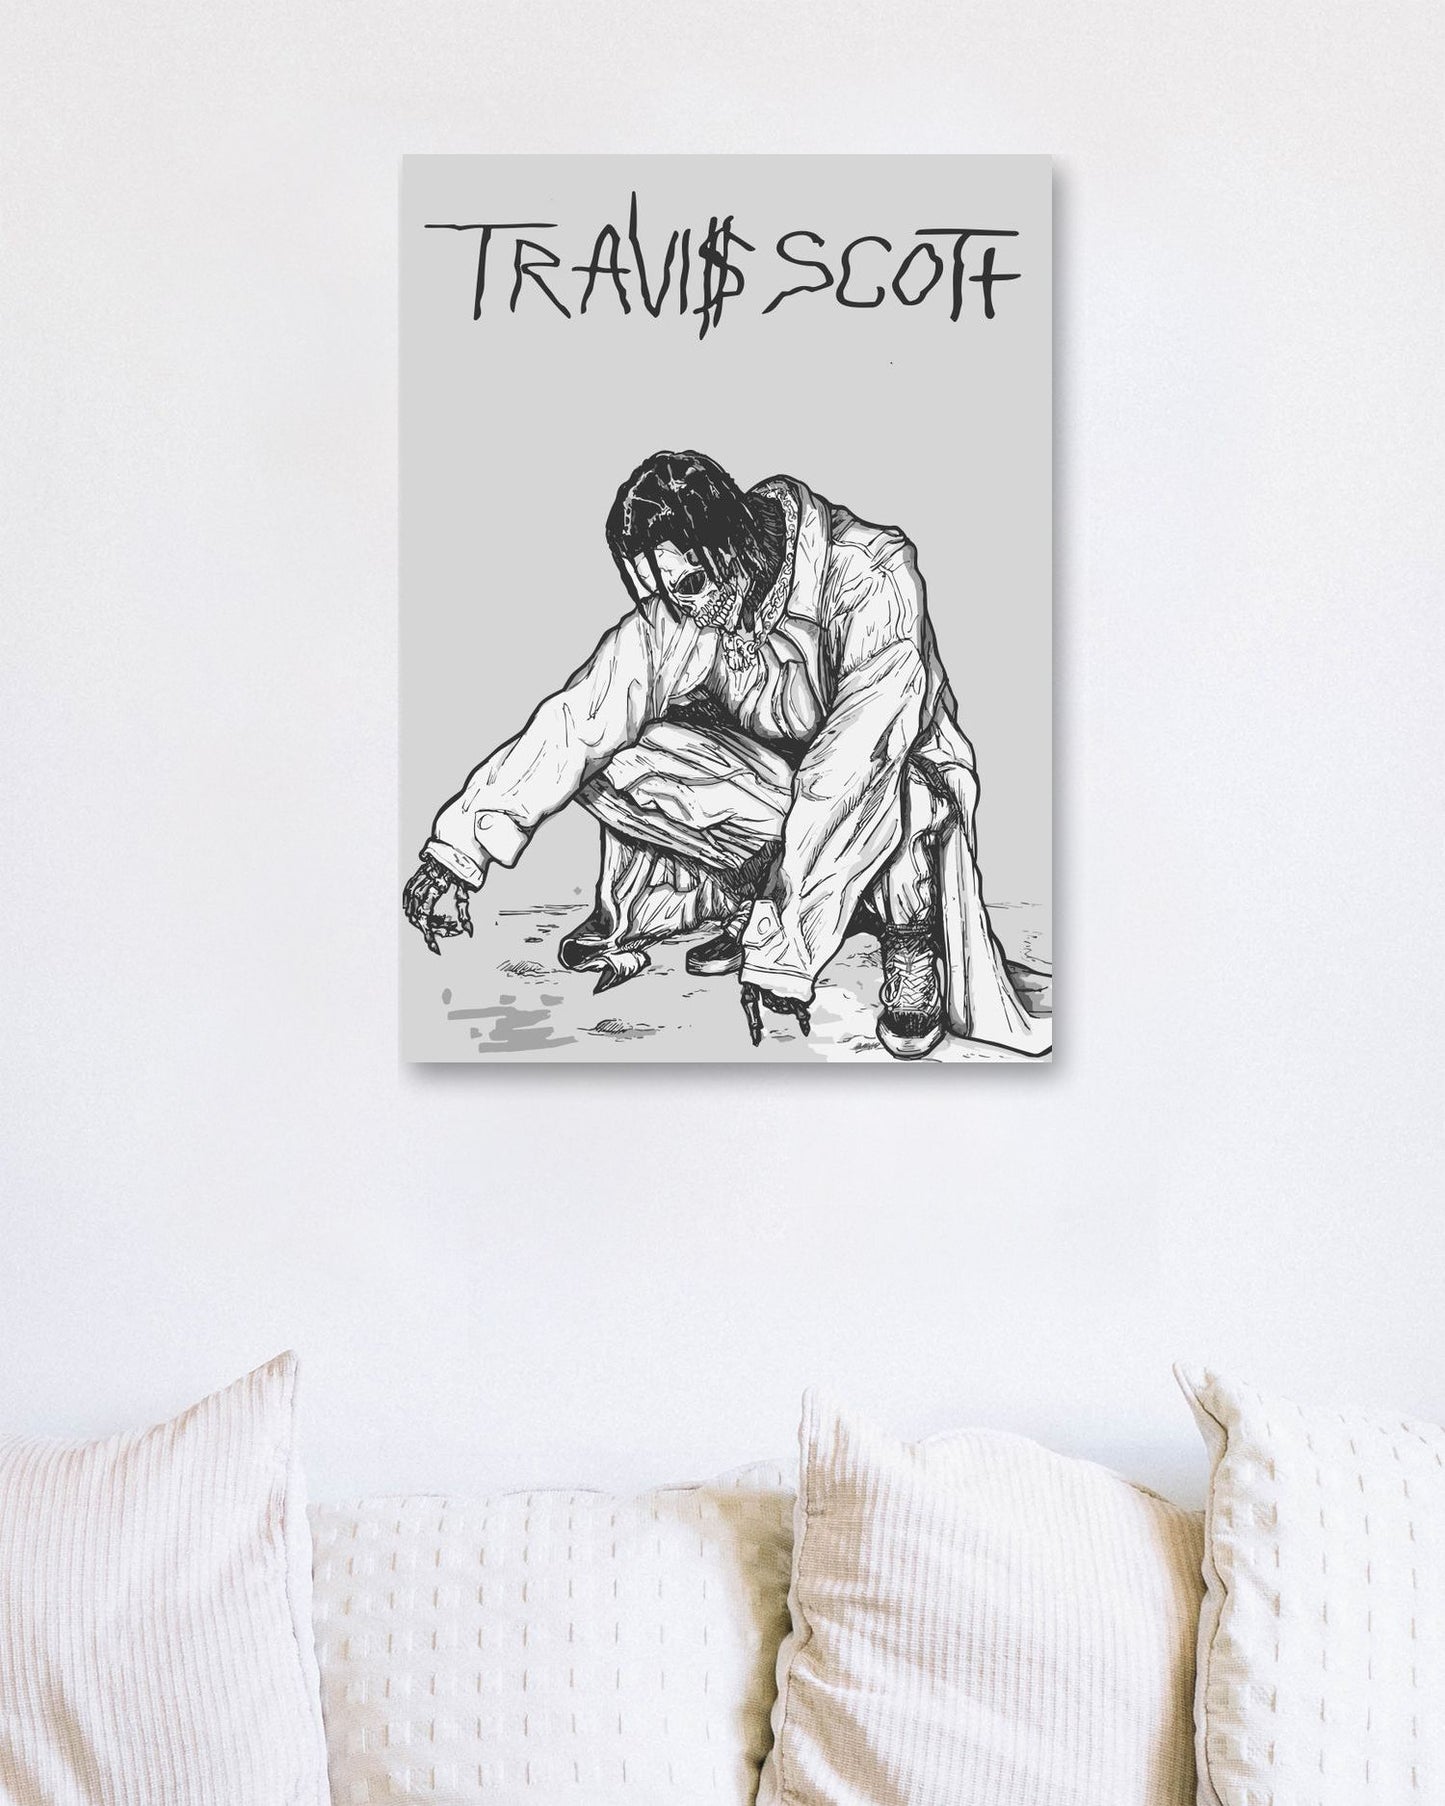 Travis Scott Skull 1 - @Hollycube